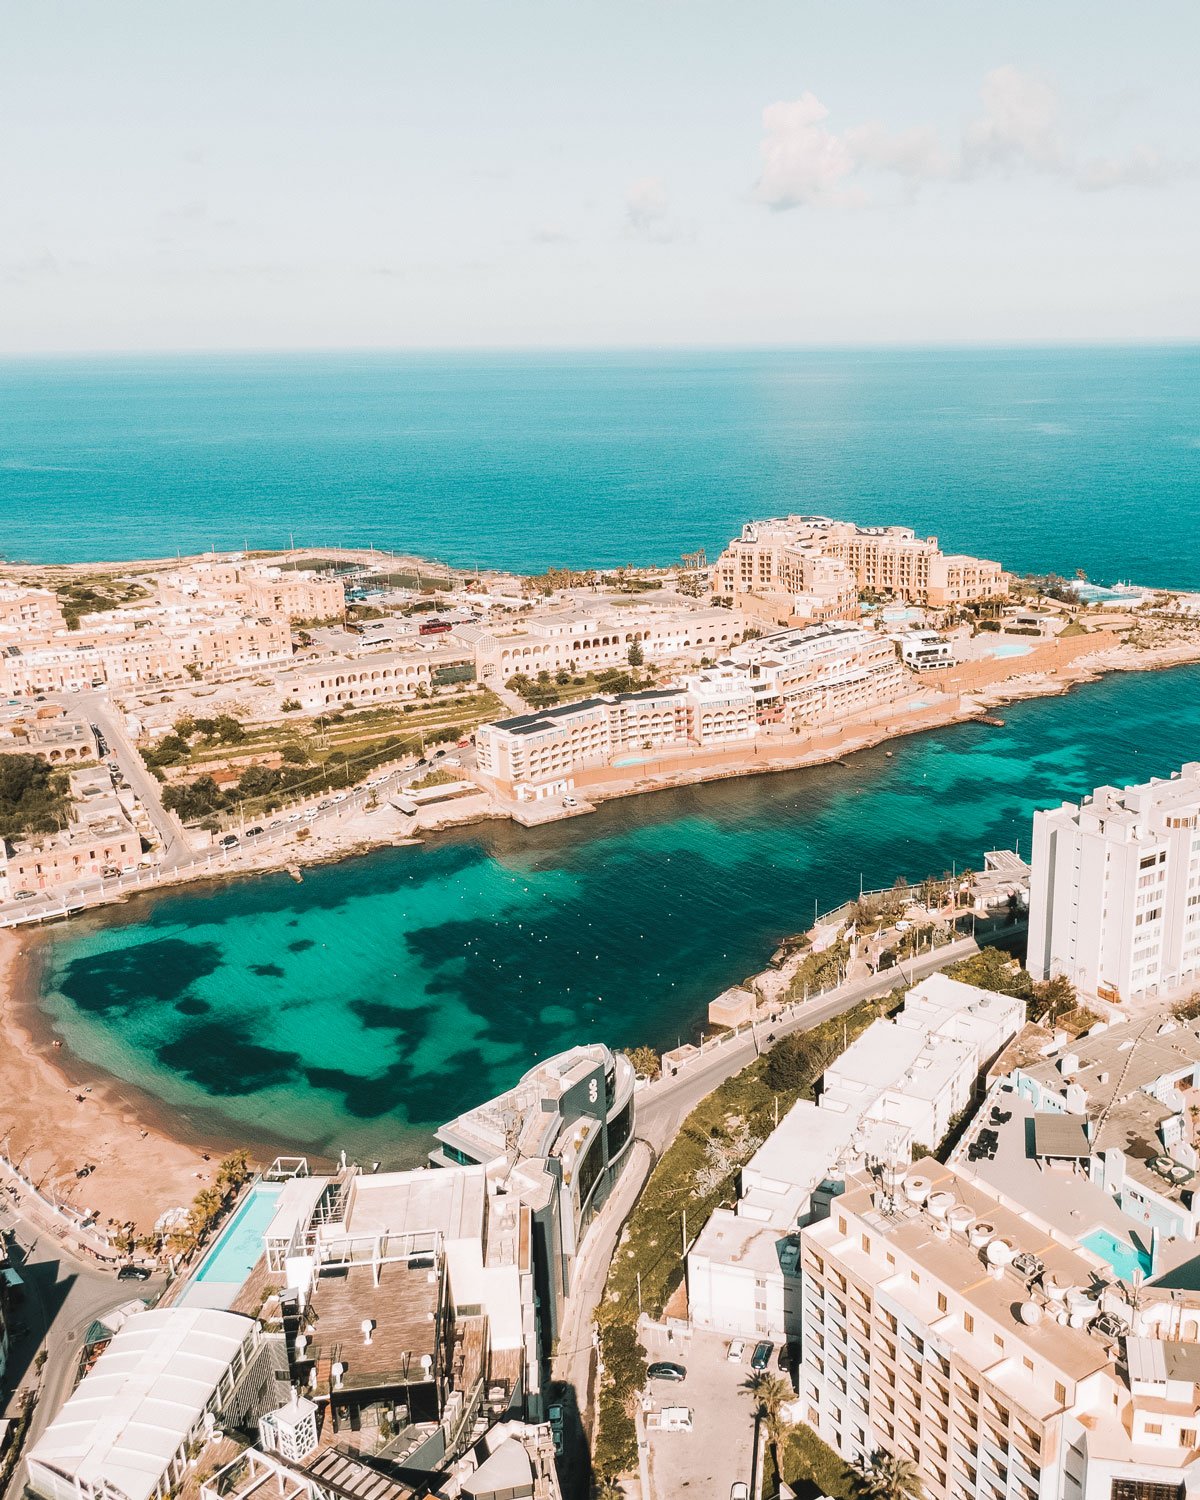 Vista do alto, St. Julian's em Malta revela uma paisagem encantadora, onde os edifícios de cores claras se erguem contra o mar azul.